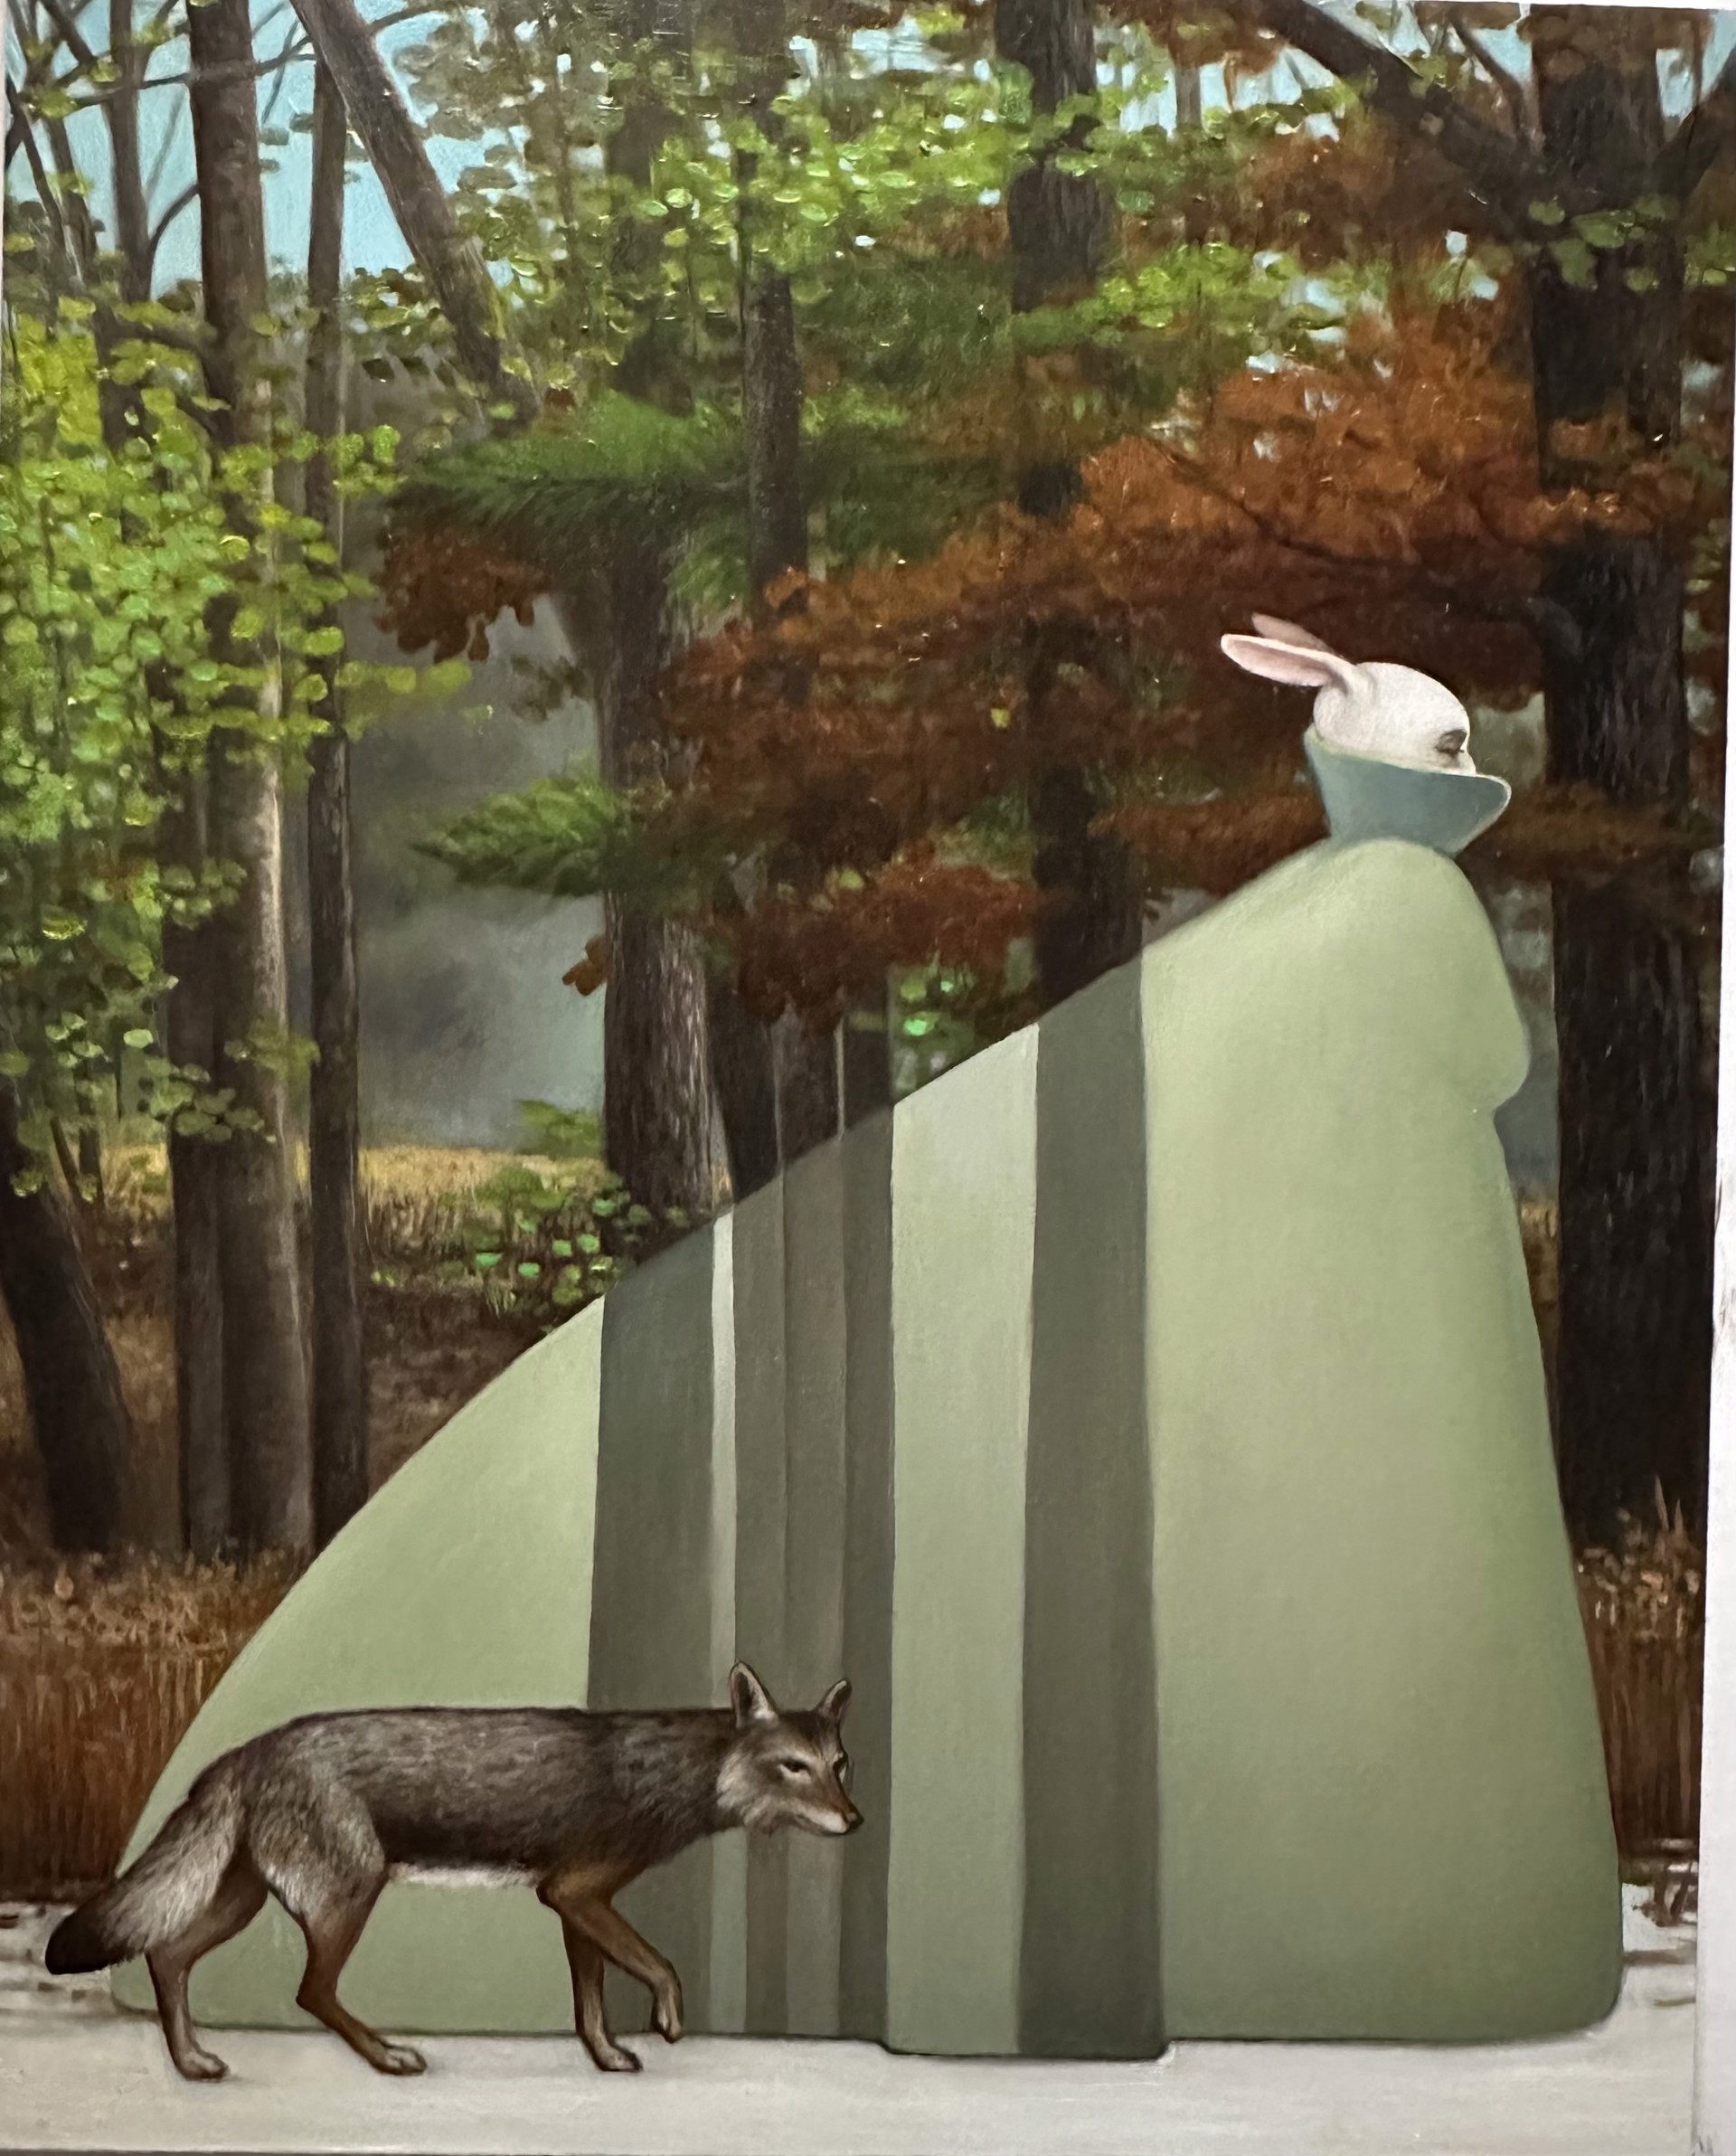 Rabbit by Kelli Hoppmann